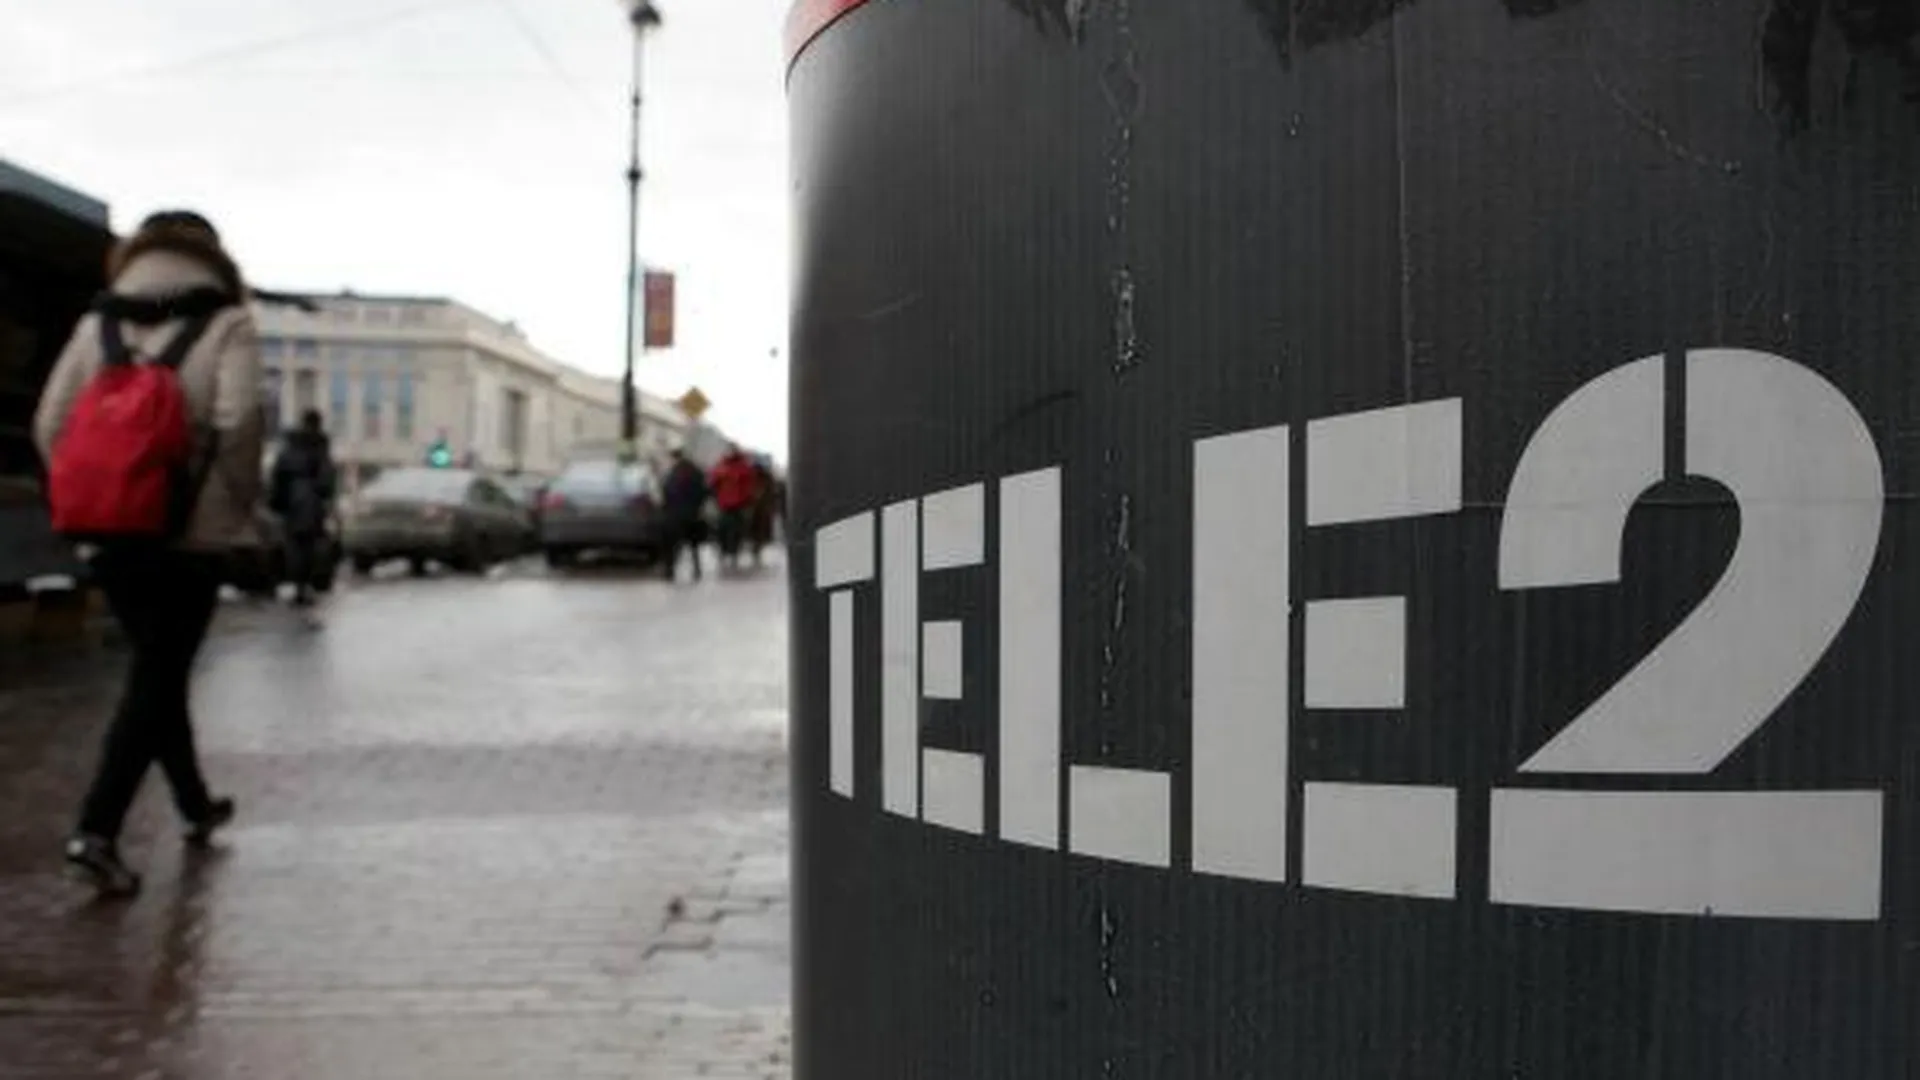 Tele2 откроет 300 салонов и точек продаж в Подмосковье и Москве